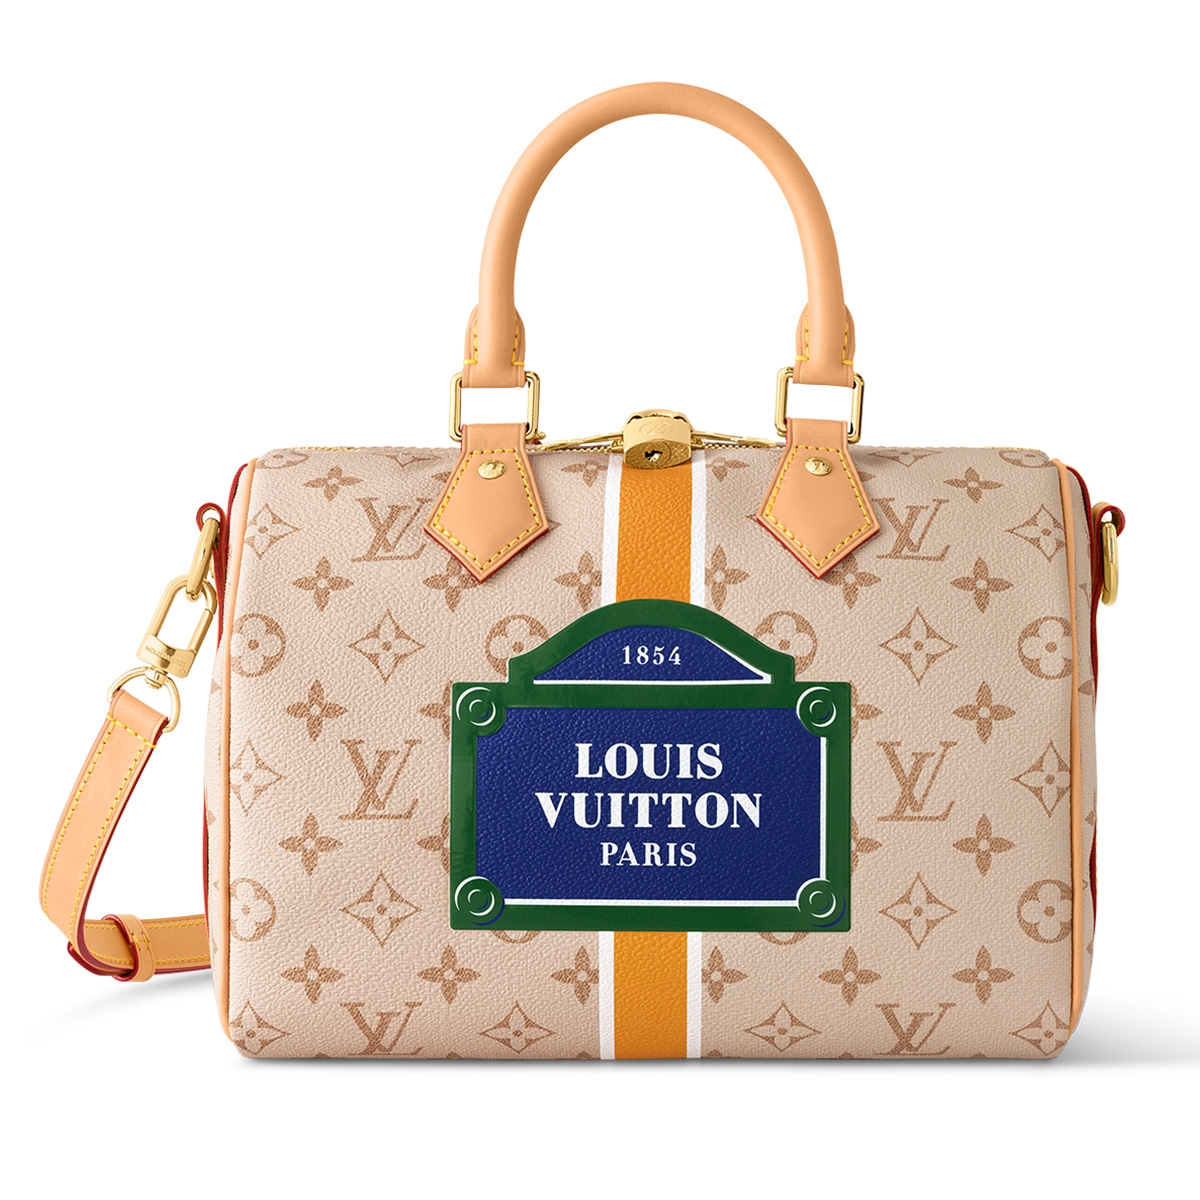 ルイ・ヴィトン」がパリのストリートサインに着想した新作バッグを発売